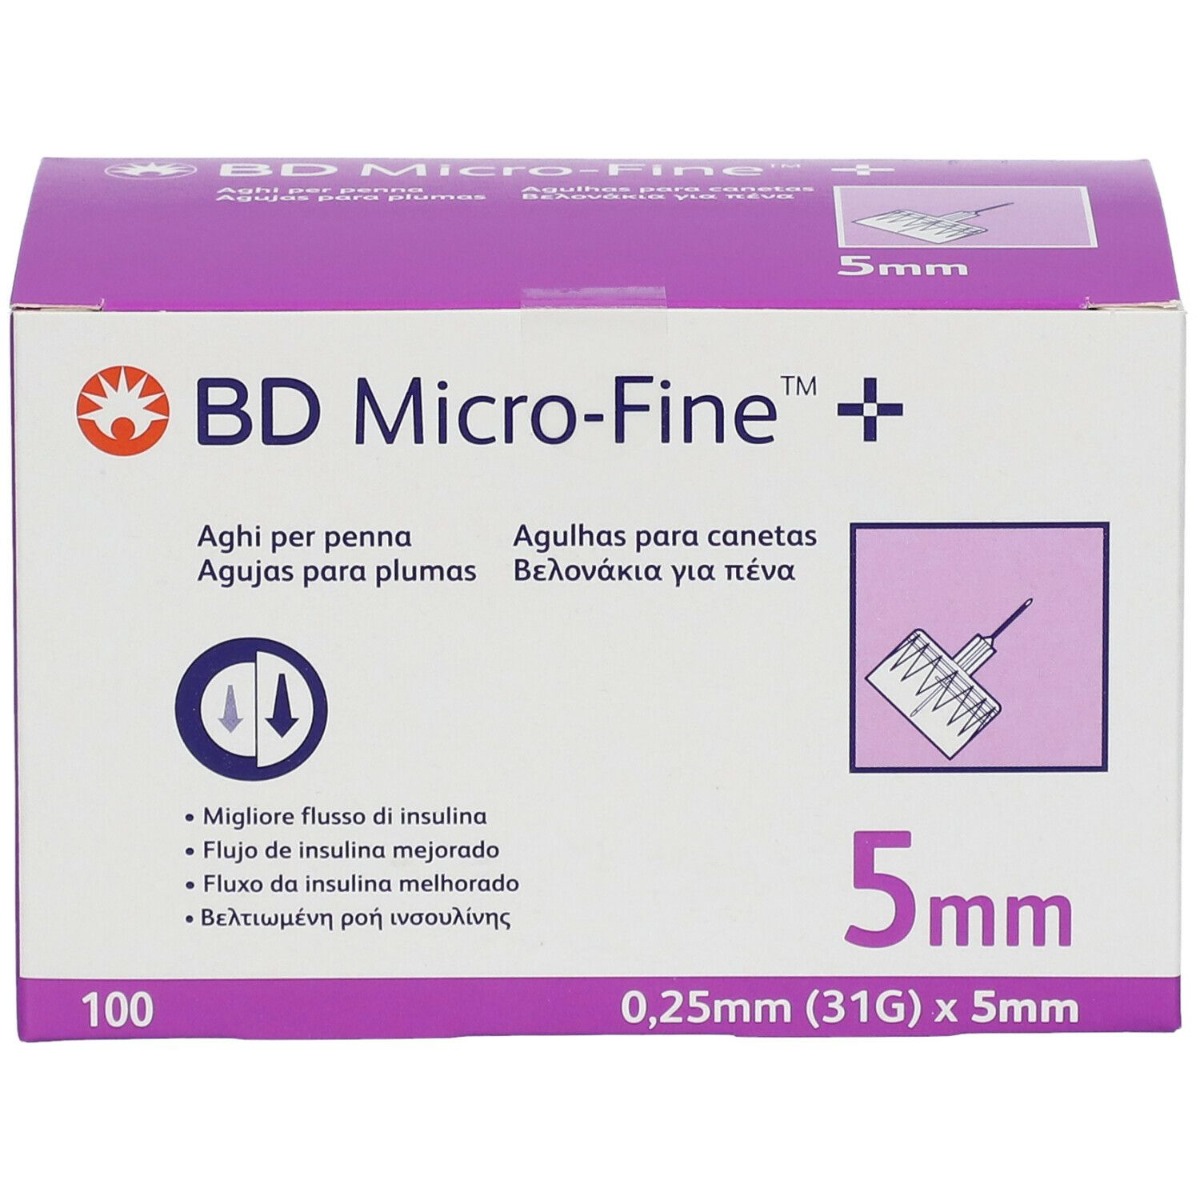 bd micro-fine aghi 31gx5mm per penna insulina 100 pezzi donna